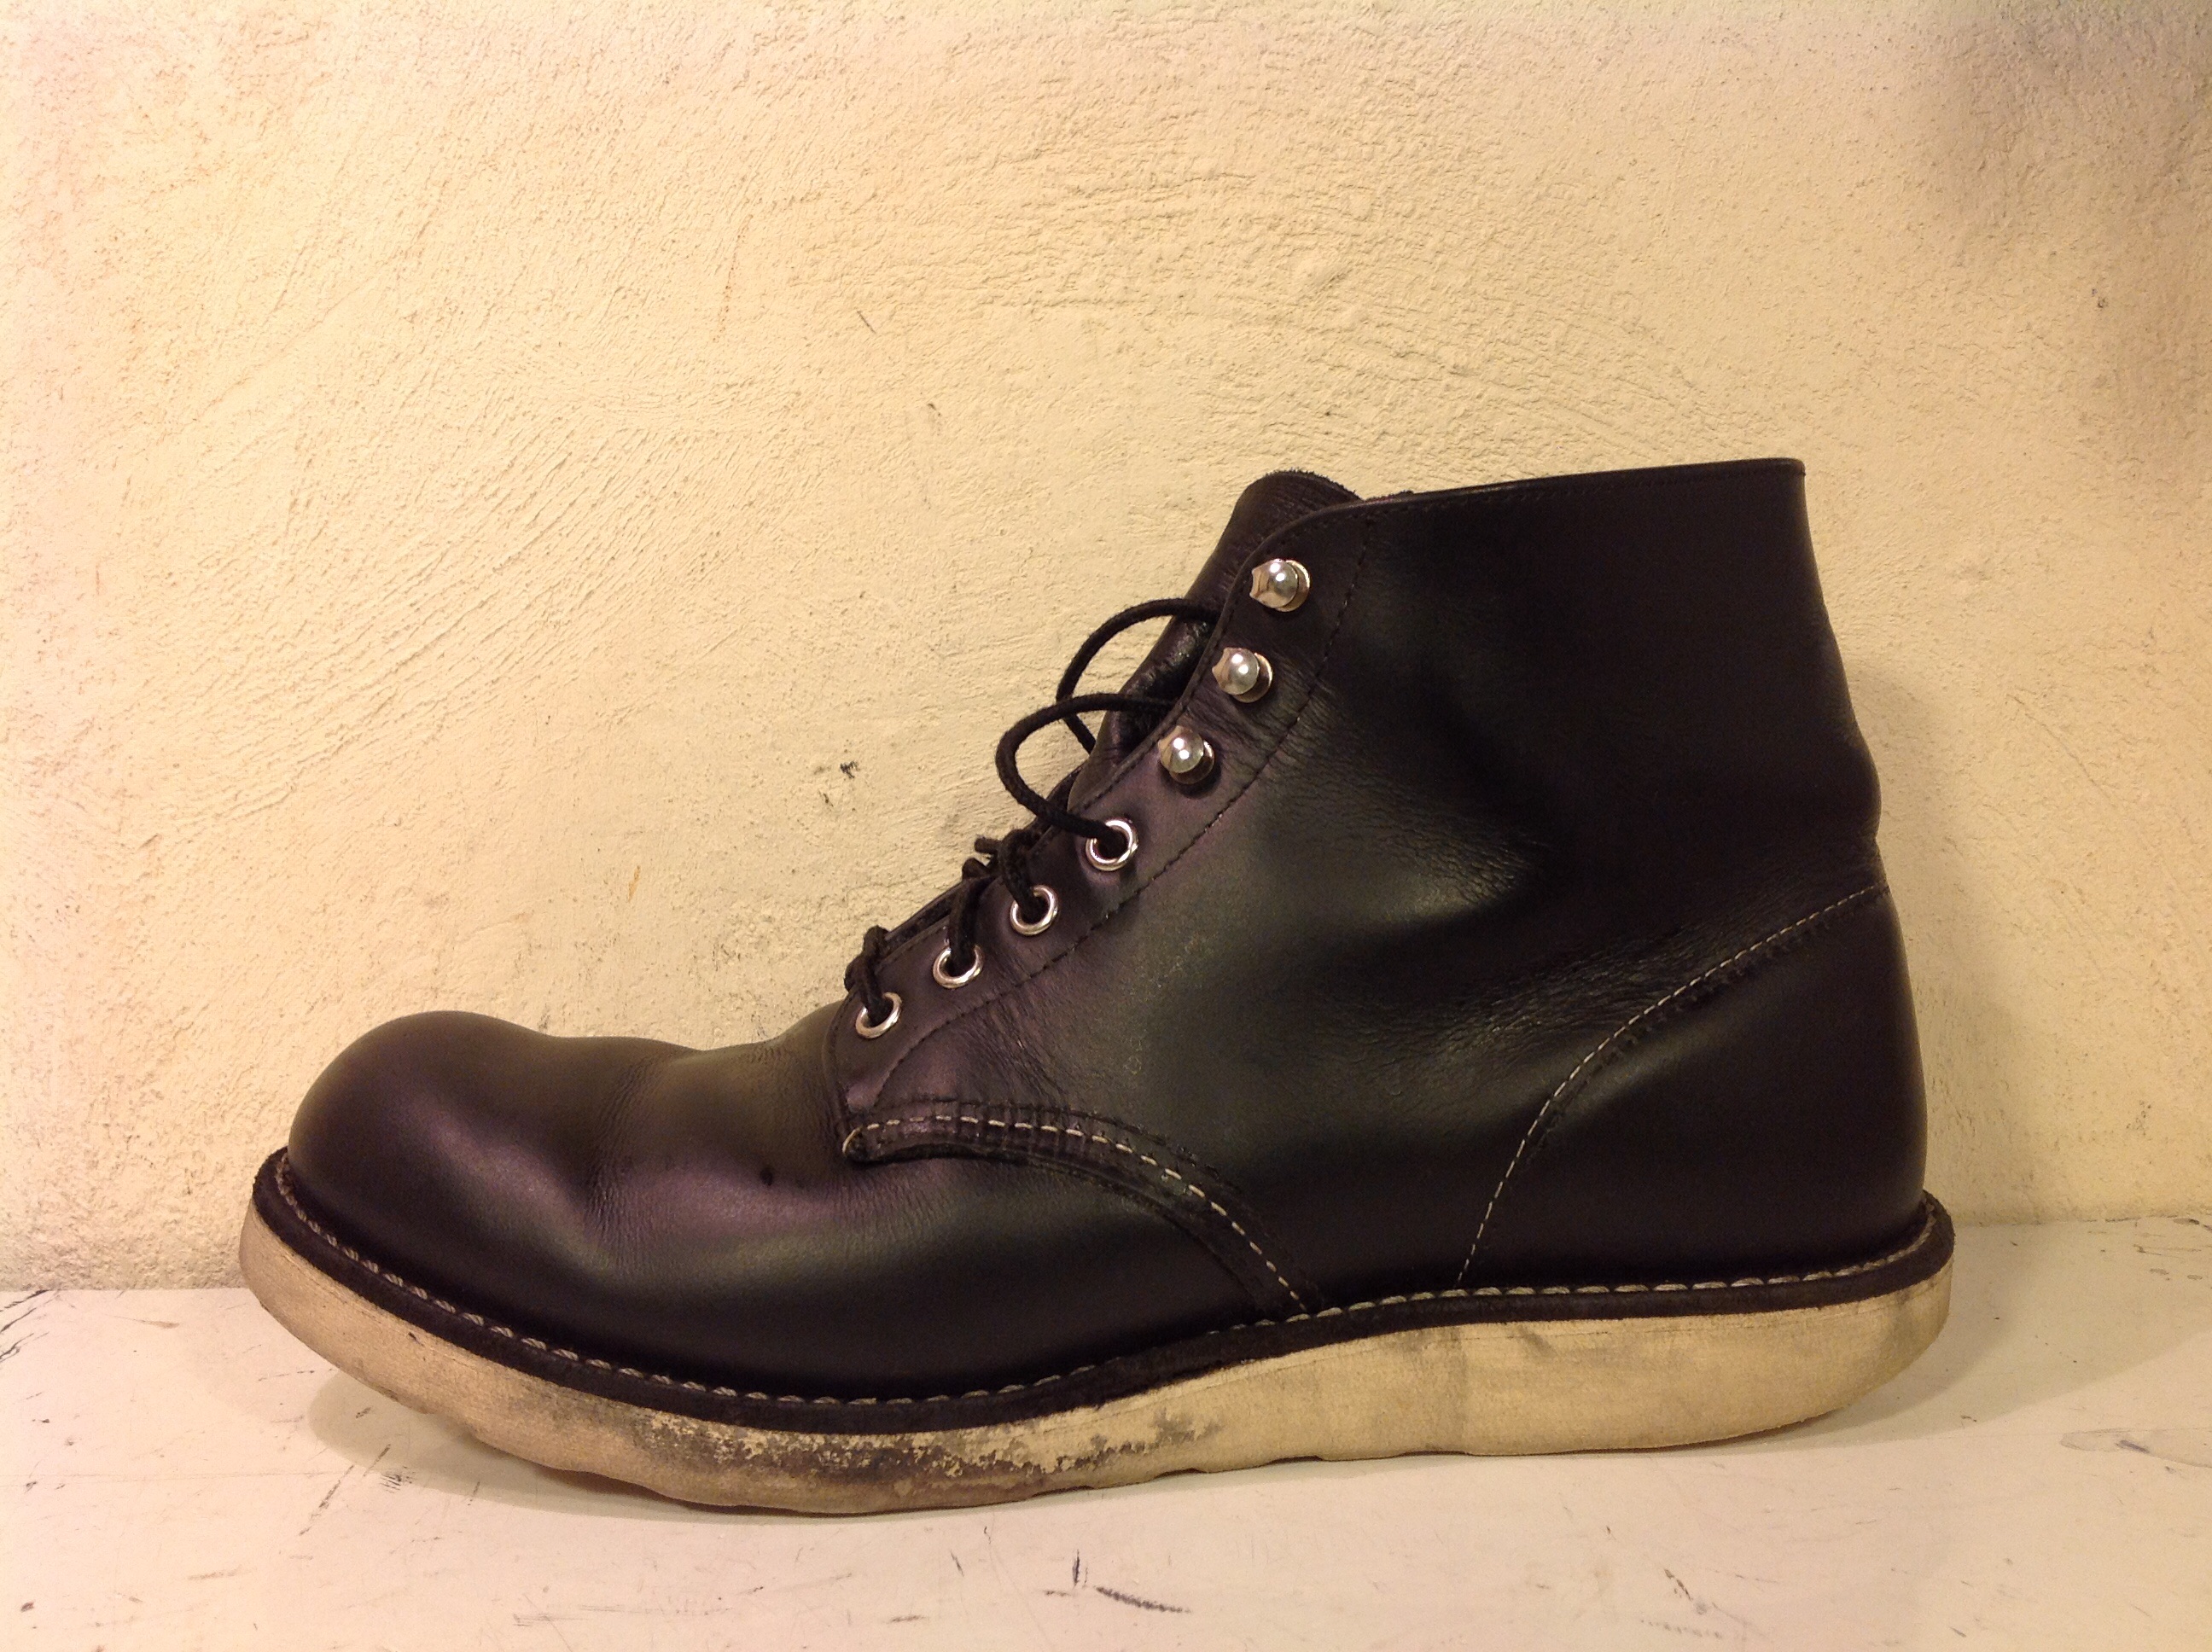 レッドウィング | 吉祥寺のオーダー靴と靴修理のお店 「tonearm」トーンアーム - Part 2